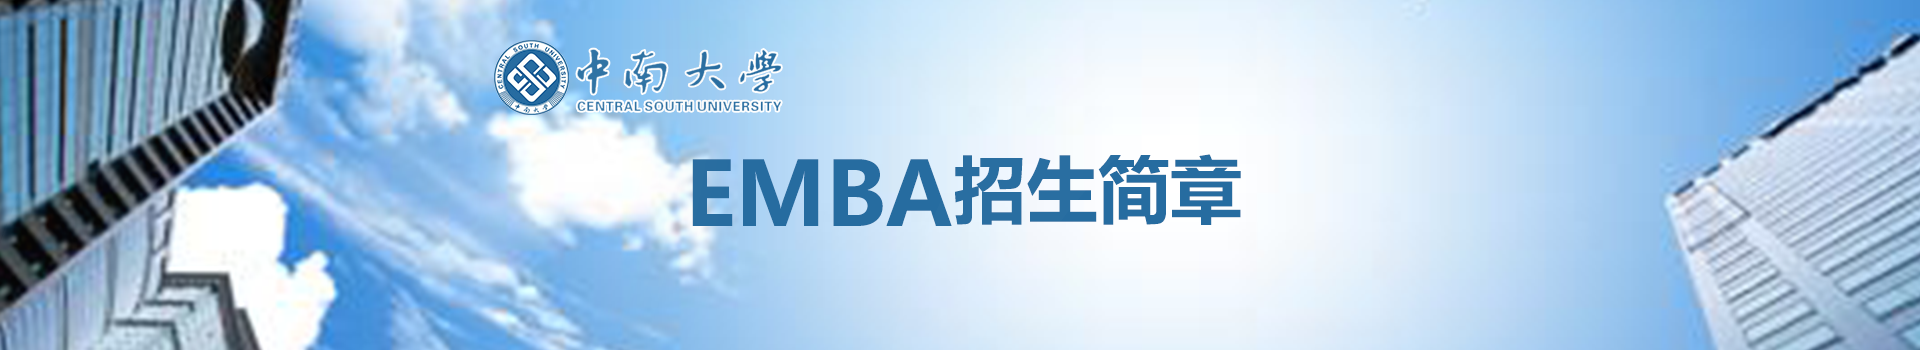 2019年中南大学商学院高级工商管理硕士EMBA招生简章